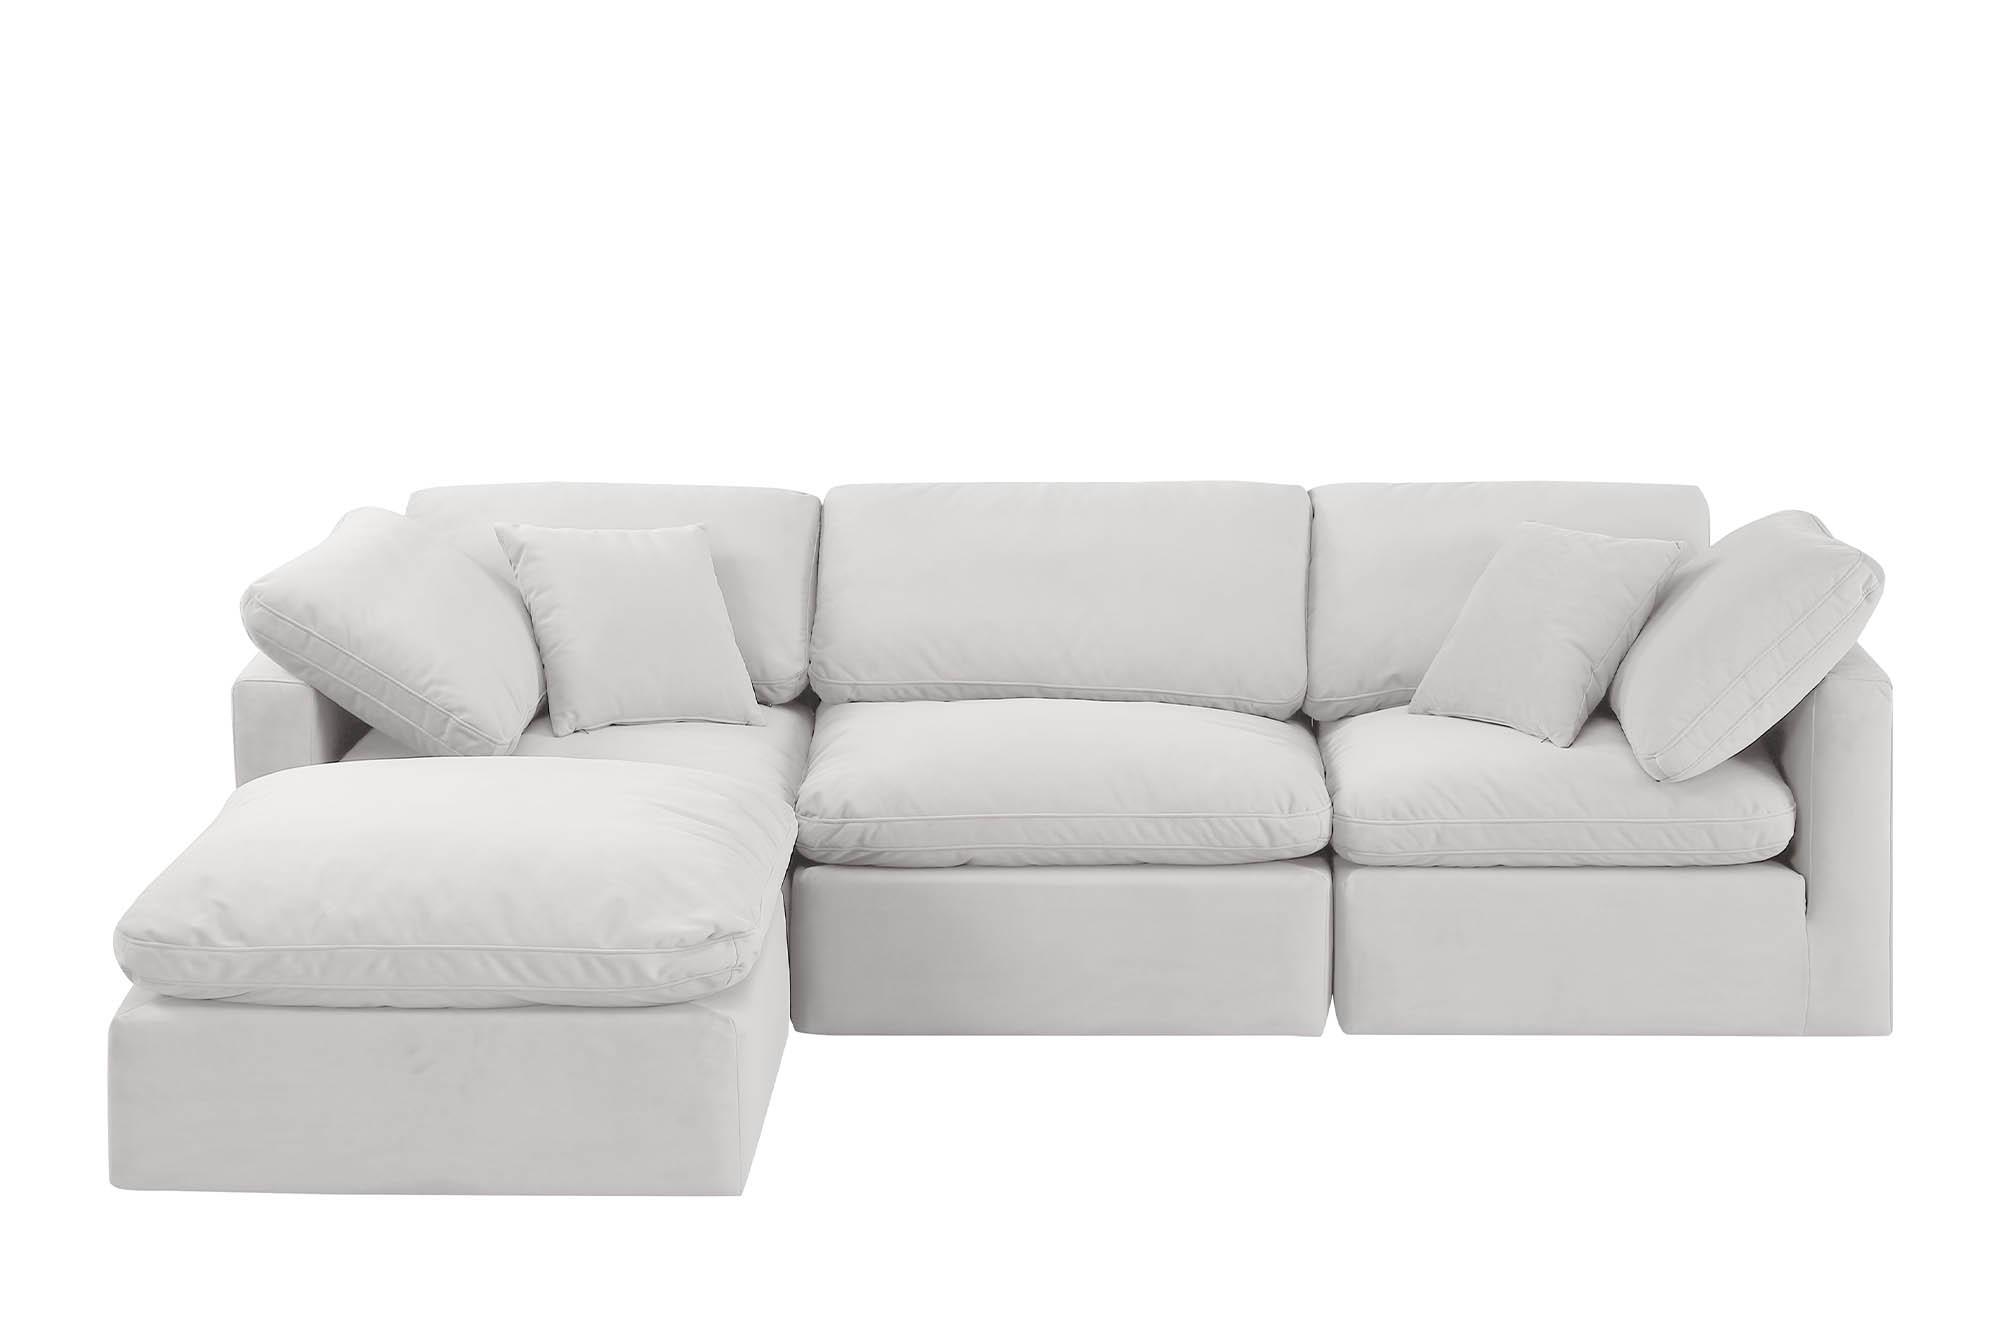 

    
Meridian Furniture INDULGE 147Cream-Sec4A Modular Sectional Sofa Cream 147Cream-Sec4A
